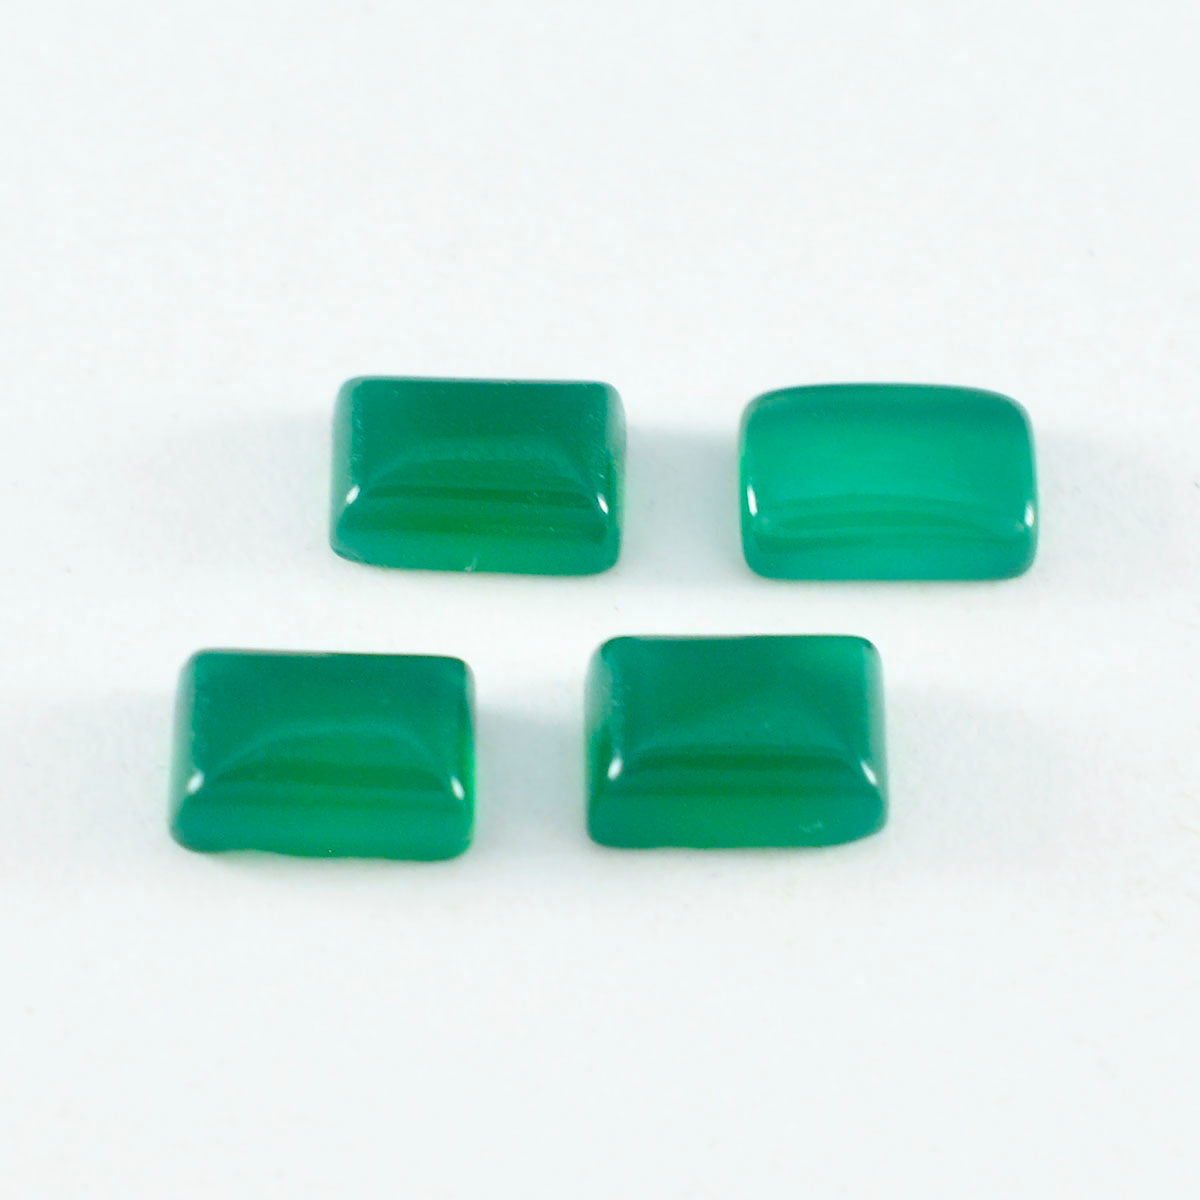 Riyogems 1 Stück grüner Onyx-Cabochon, 8 x 10 mm, Achteckform, hübscher, hochwertiger, loser Edelstein